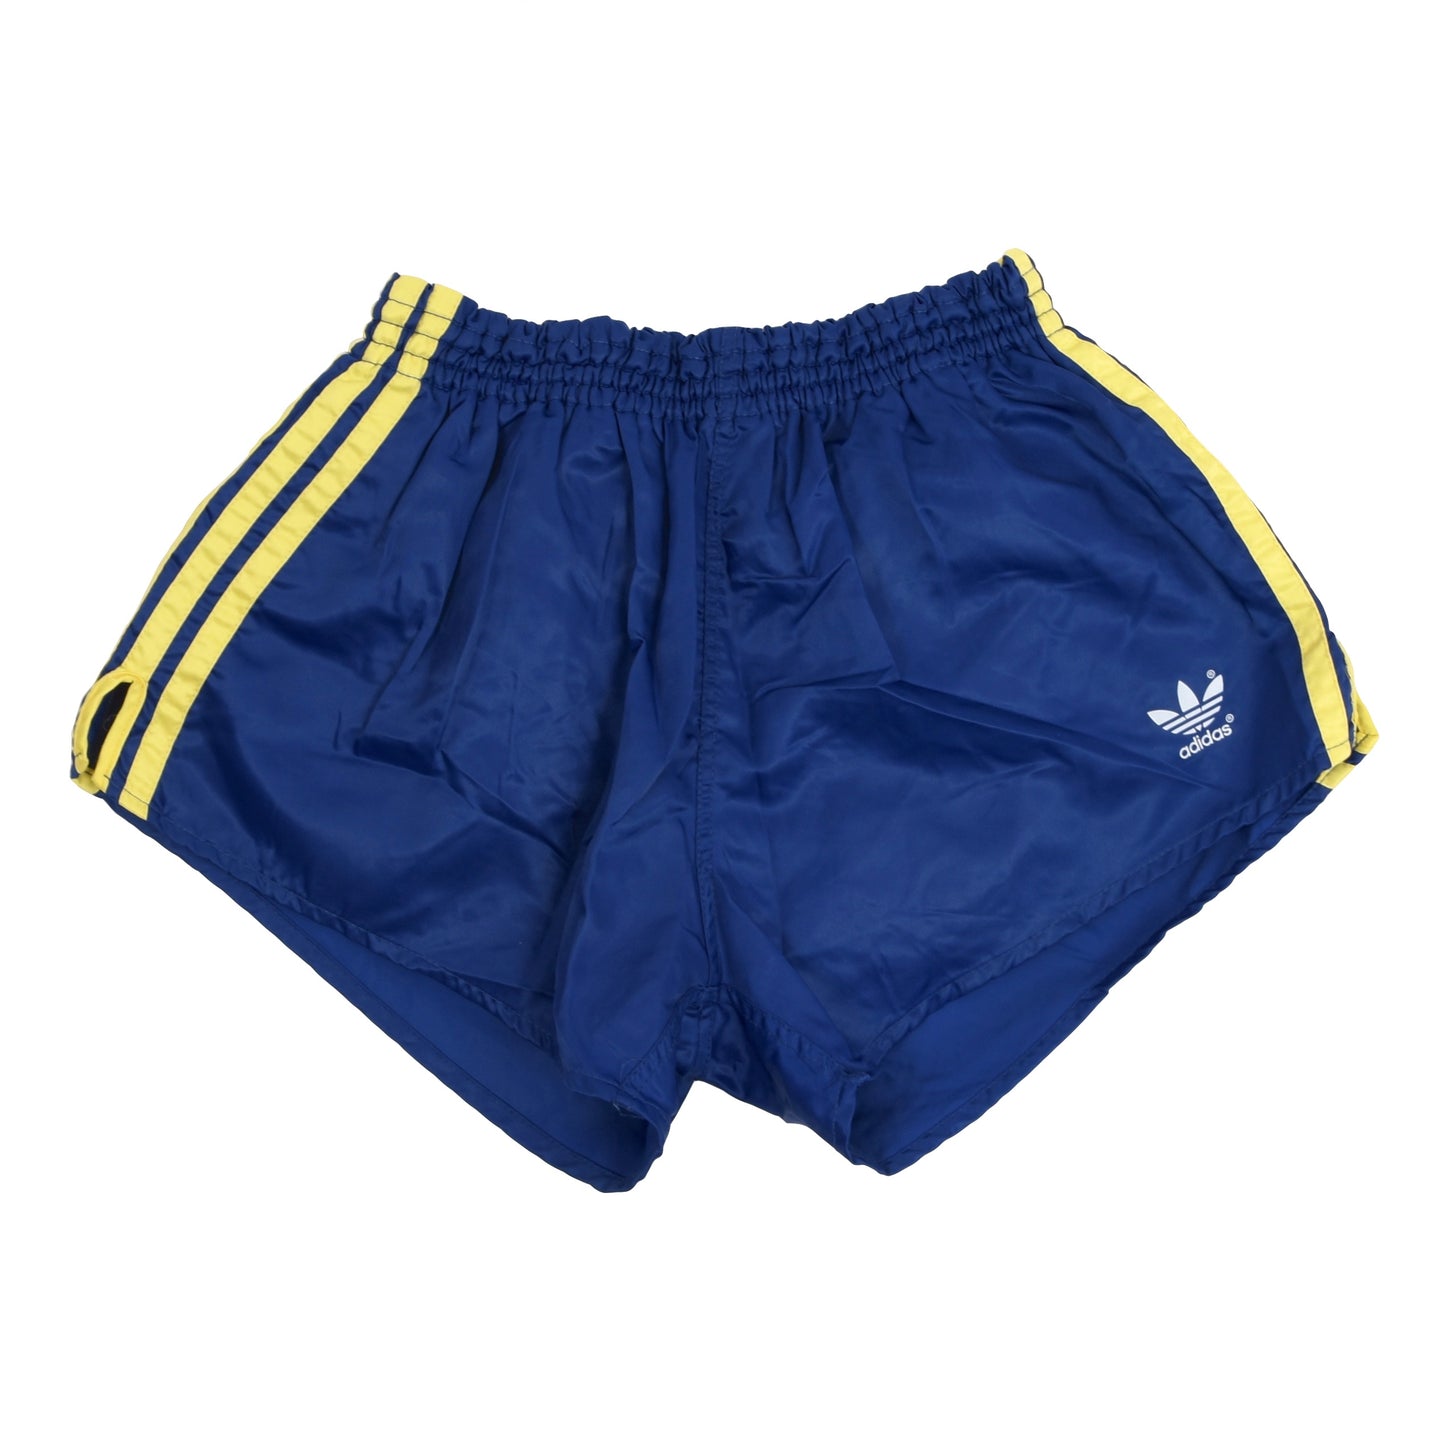 Vintage Adidas Sprinter Shorts Größe D6 - blau/gelb